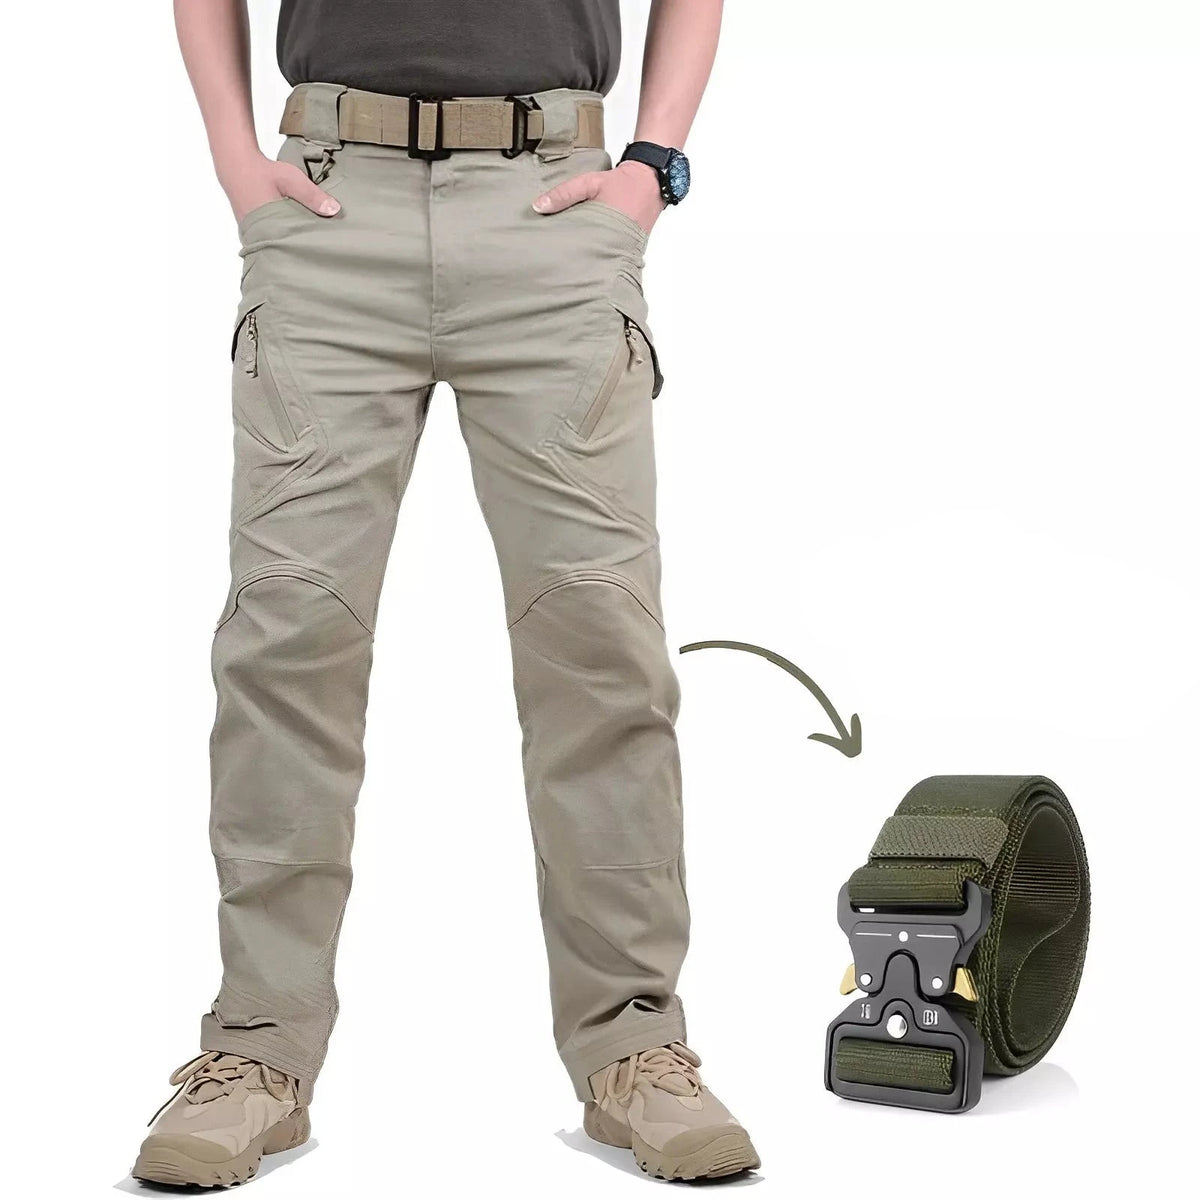 Calça Military Tactical Ultra Resistente e Impermeável + Cinto